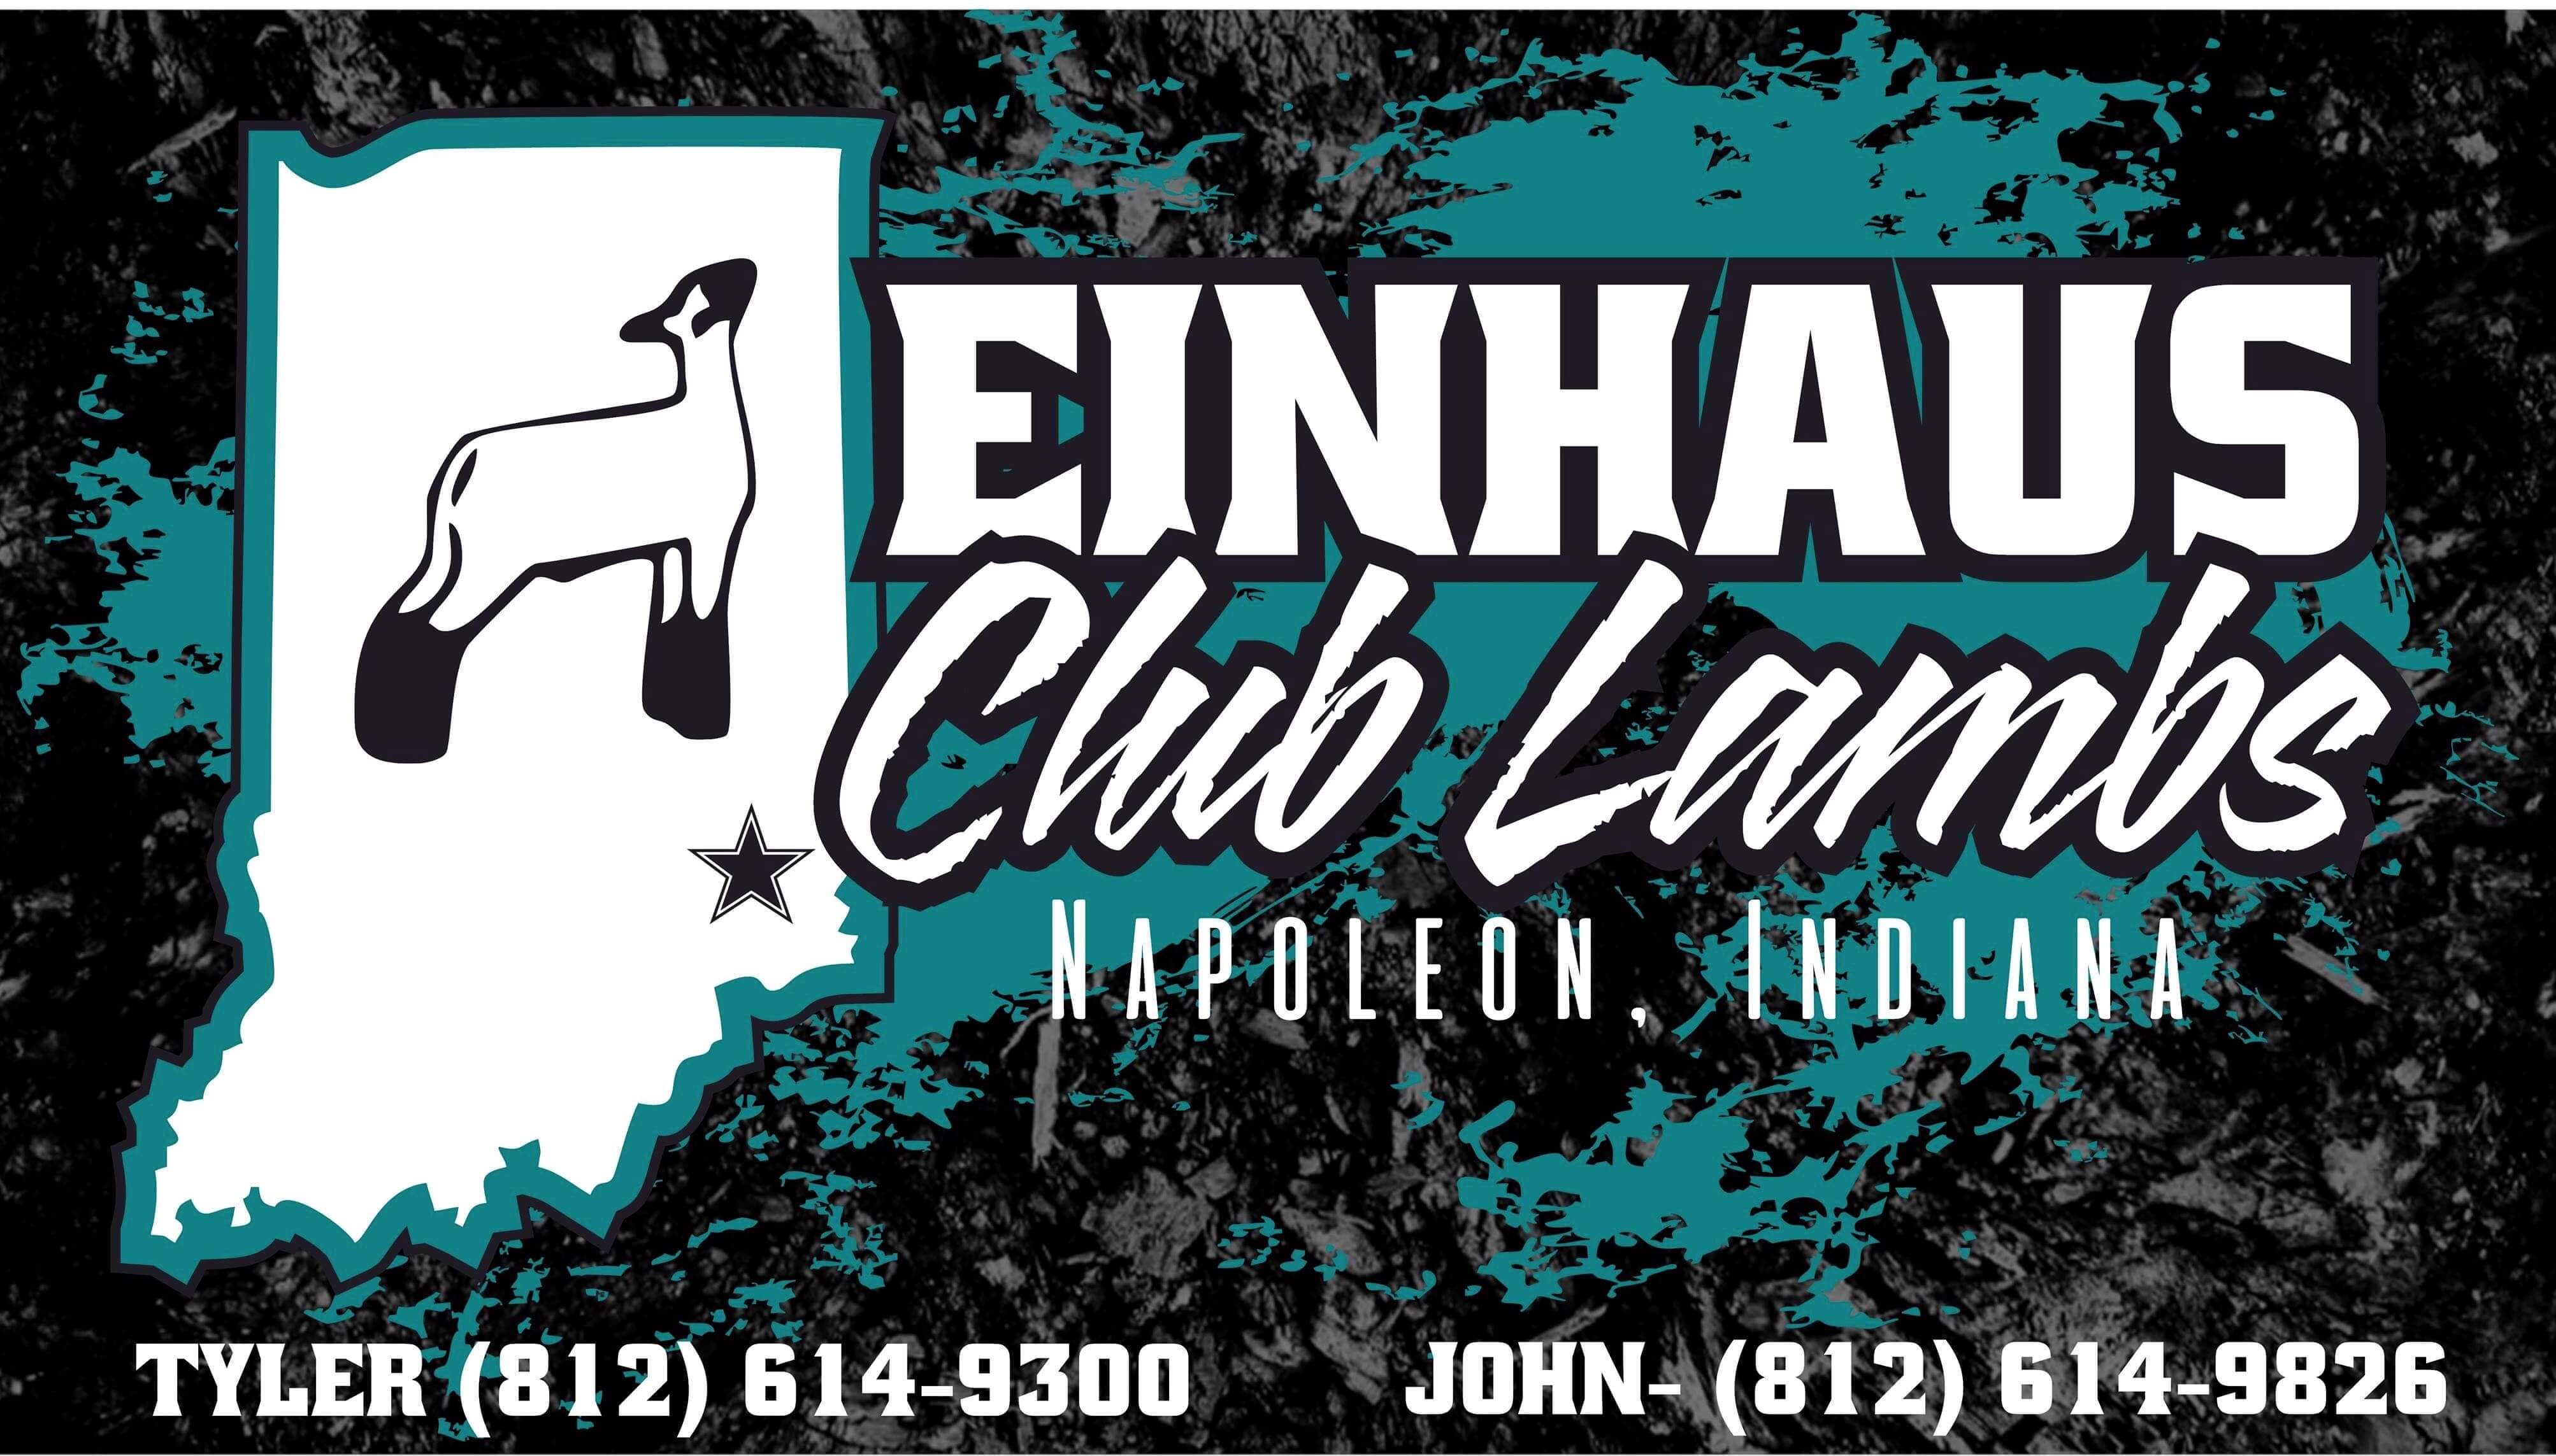 Einhaus Club Lambs, LLC Logo